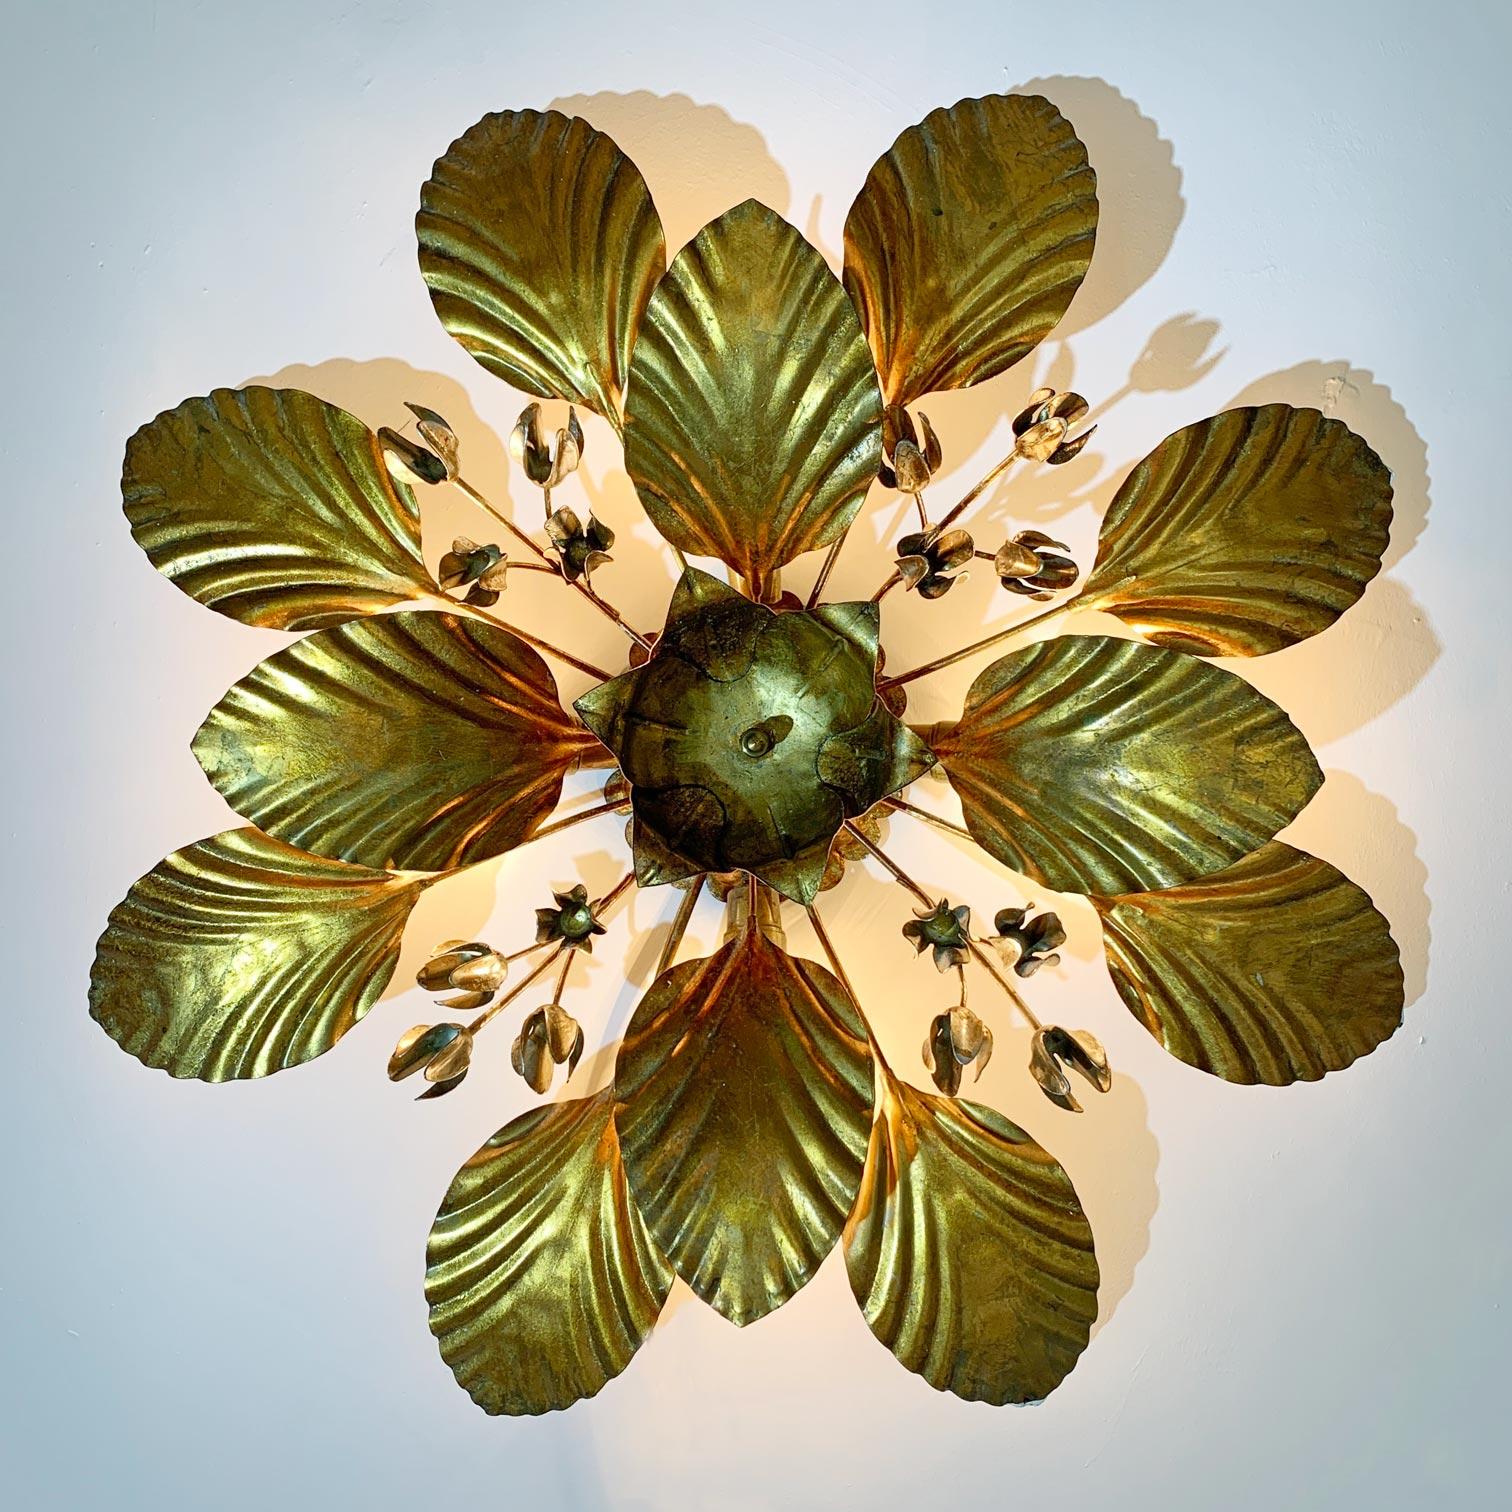 De grandes feuilles dorées entourant des tiges avec des clochettes de fleurs argentées, forment ces lampes à encastrer de forme florale.

Par Hans Kogl, Allemagne, années 1970

Il s'agit de luminaires originaux de Hans Kogl datant des années 70, et